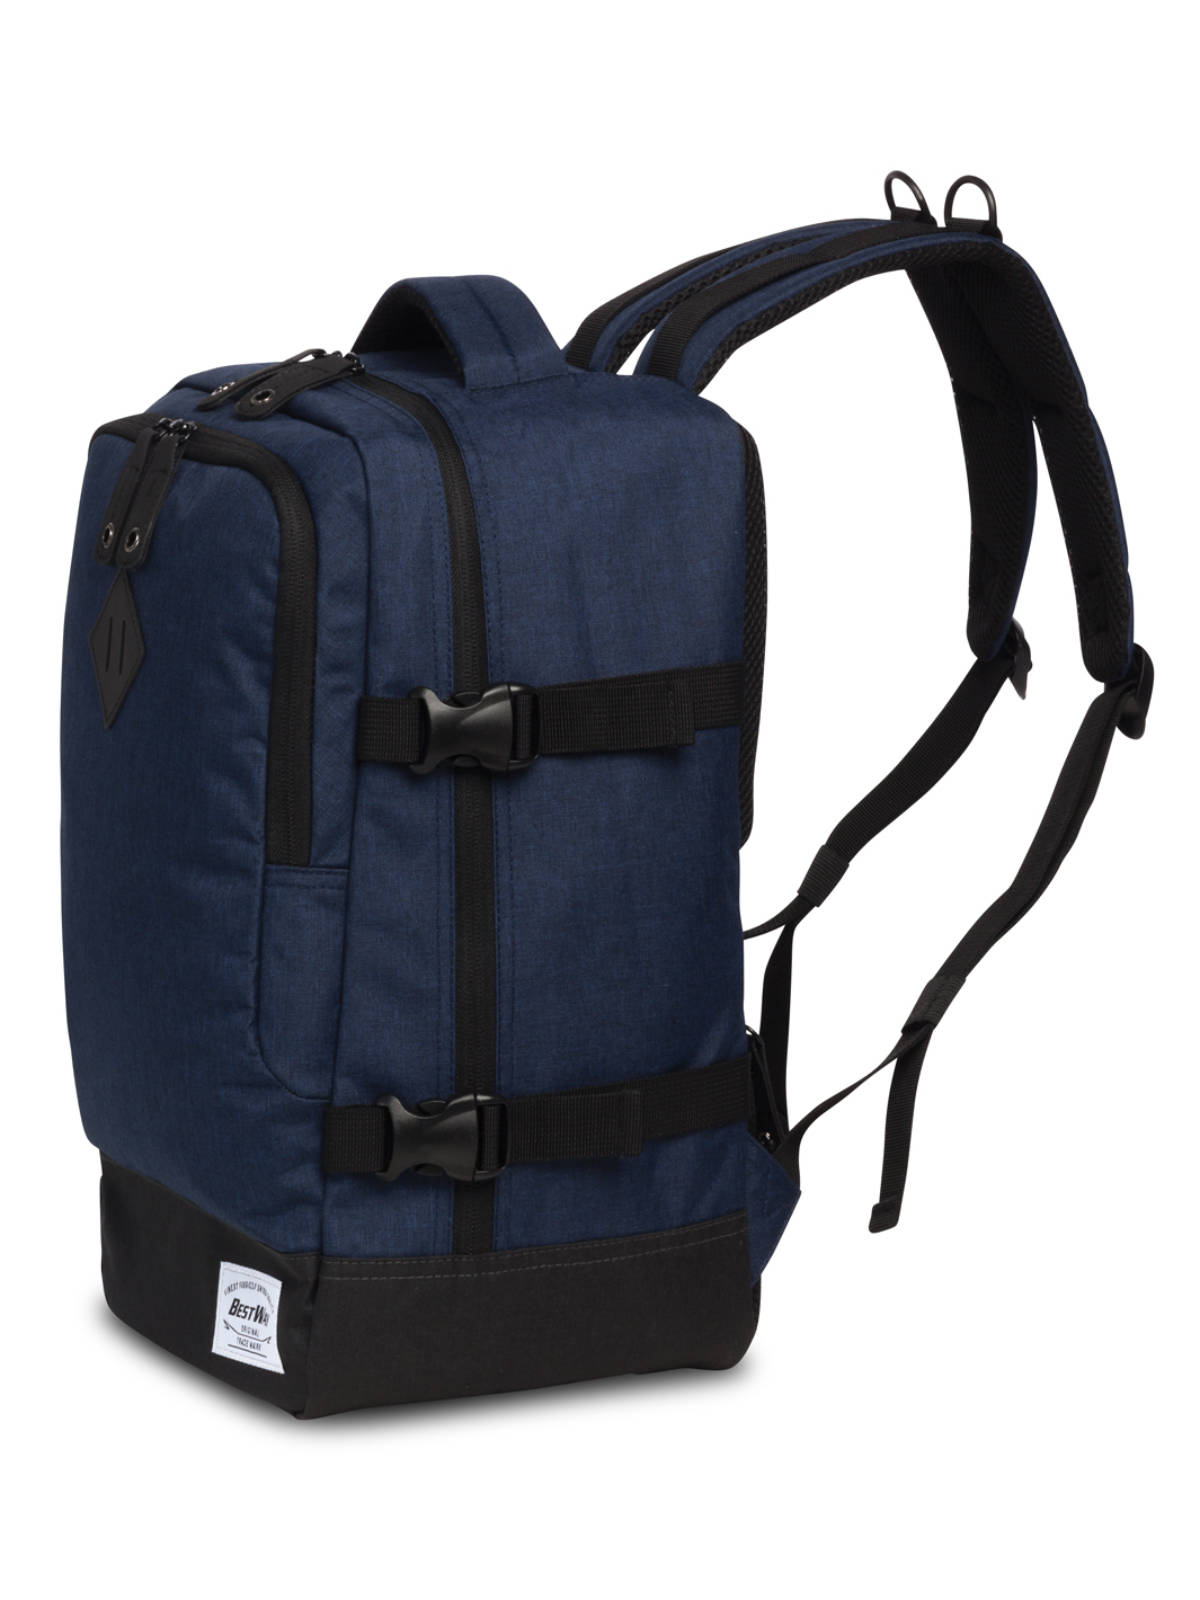 Bestway Cabin Pro Small Handgepäck Rucksack 40x20x25cm dunkelblau seitliche Ansicht